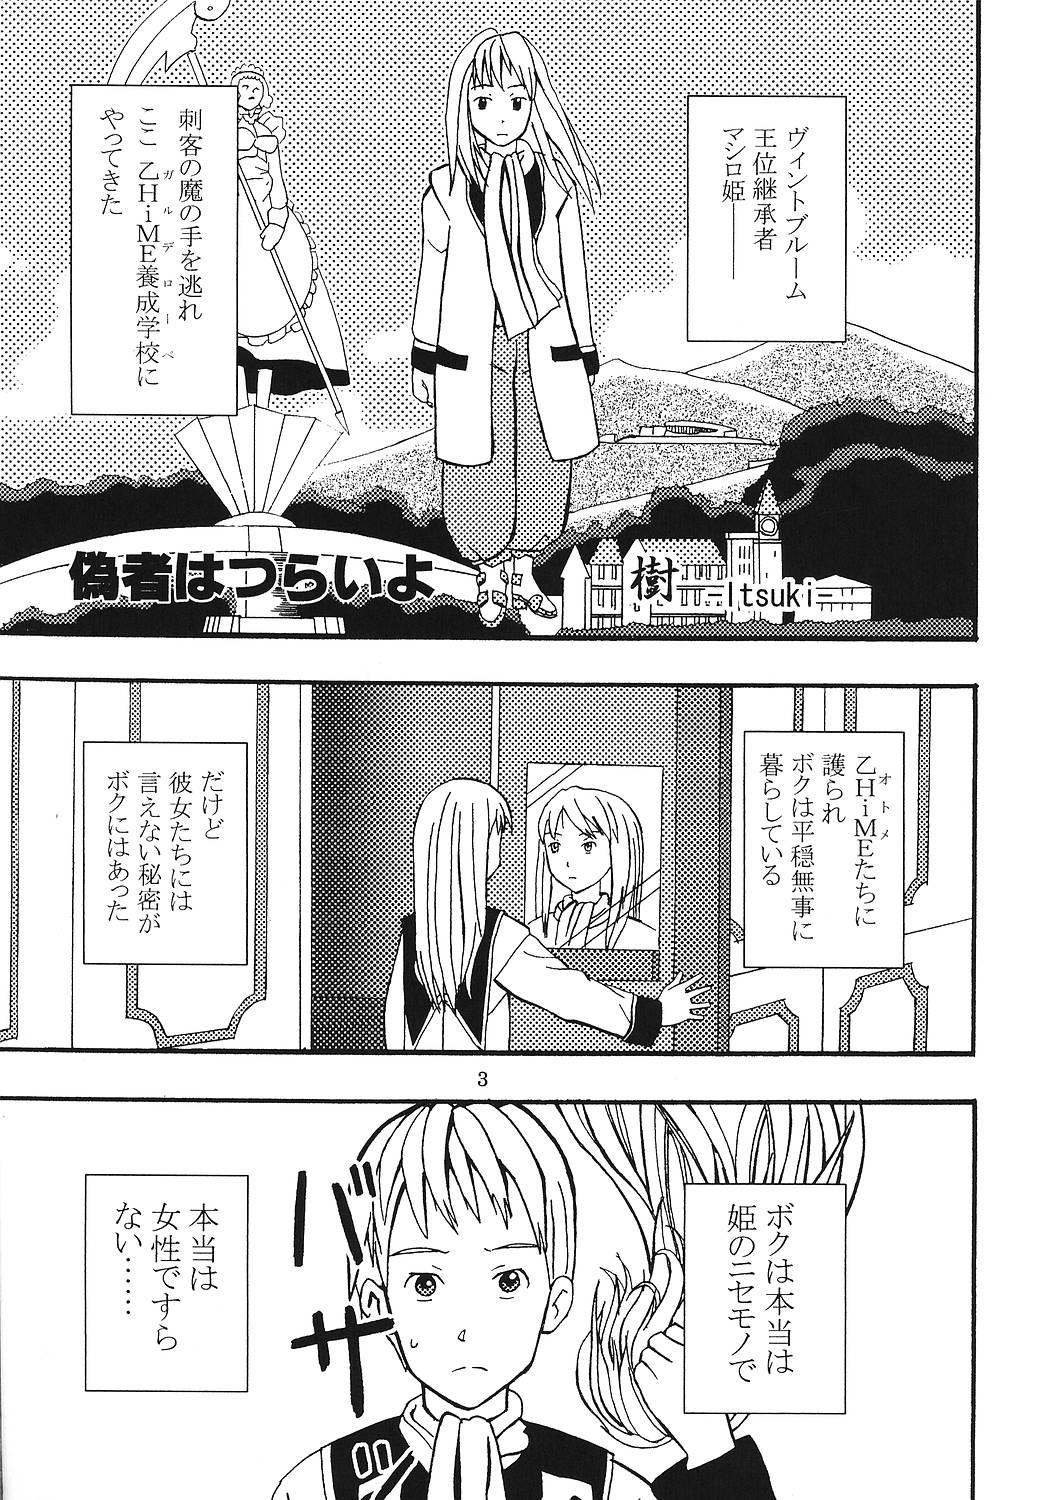 No Condom SUPER COSMIC BREED 3 - Super robot wars Mai-hime Mai-otome Ride - Page 4